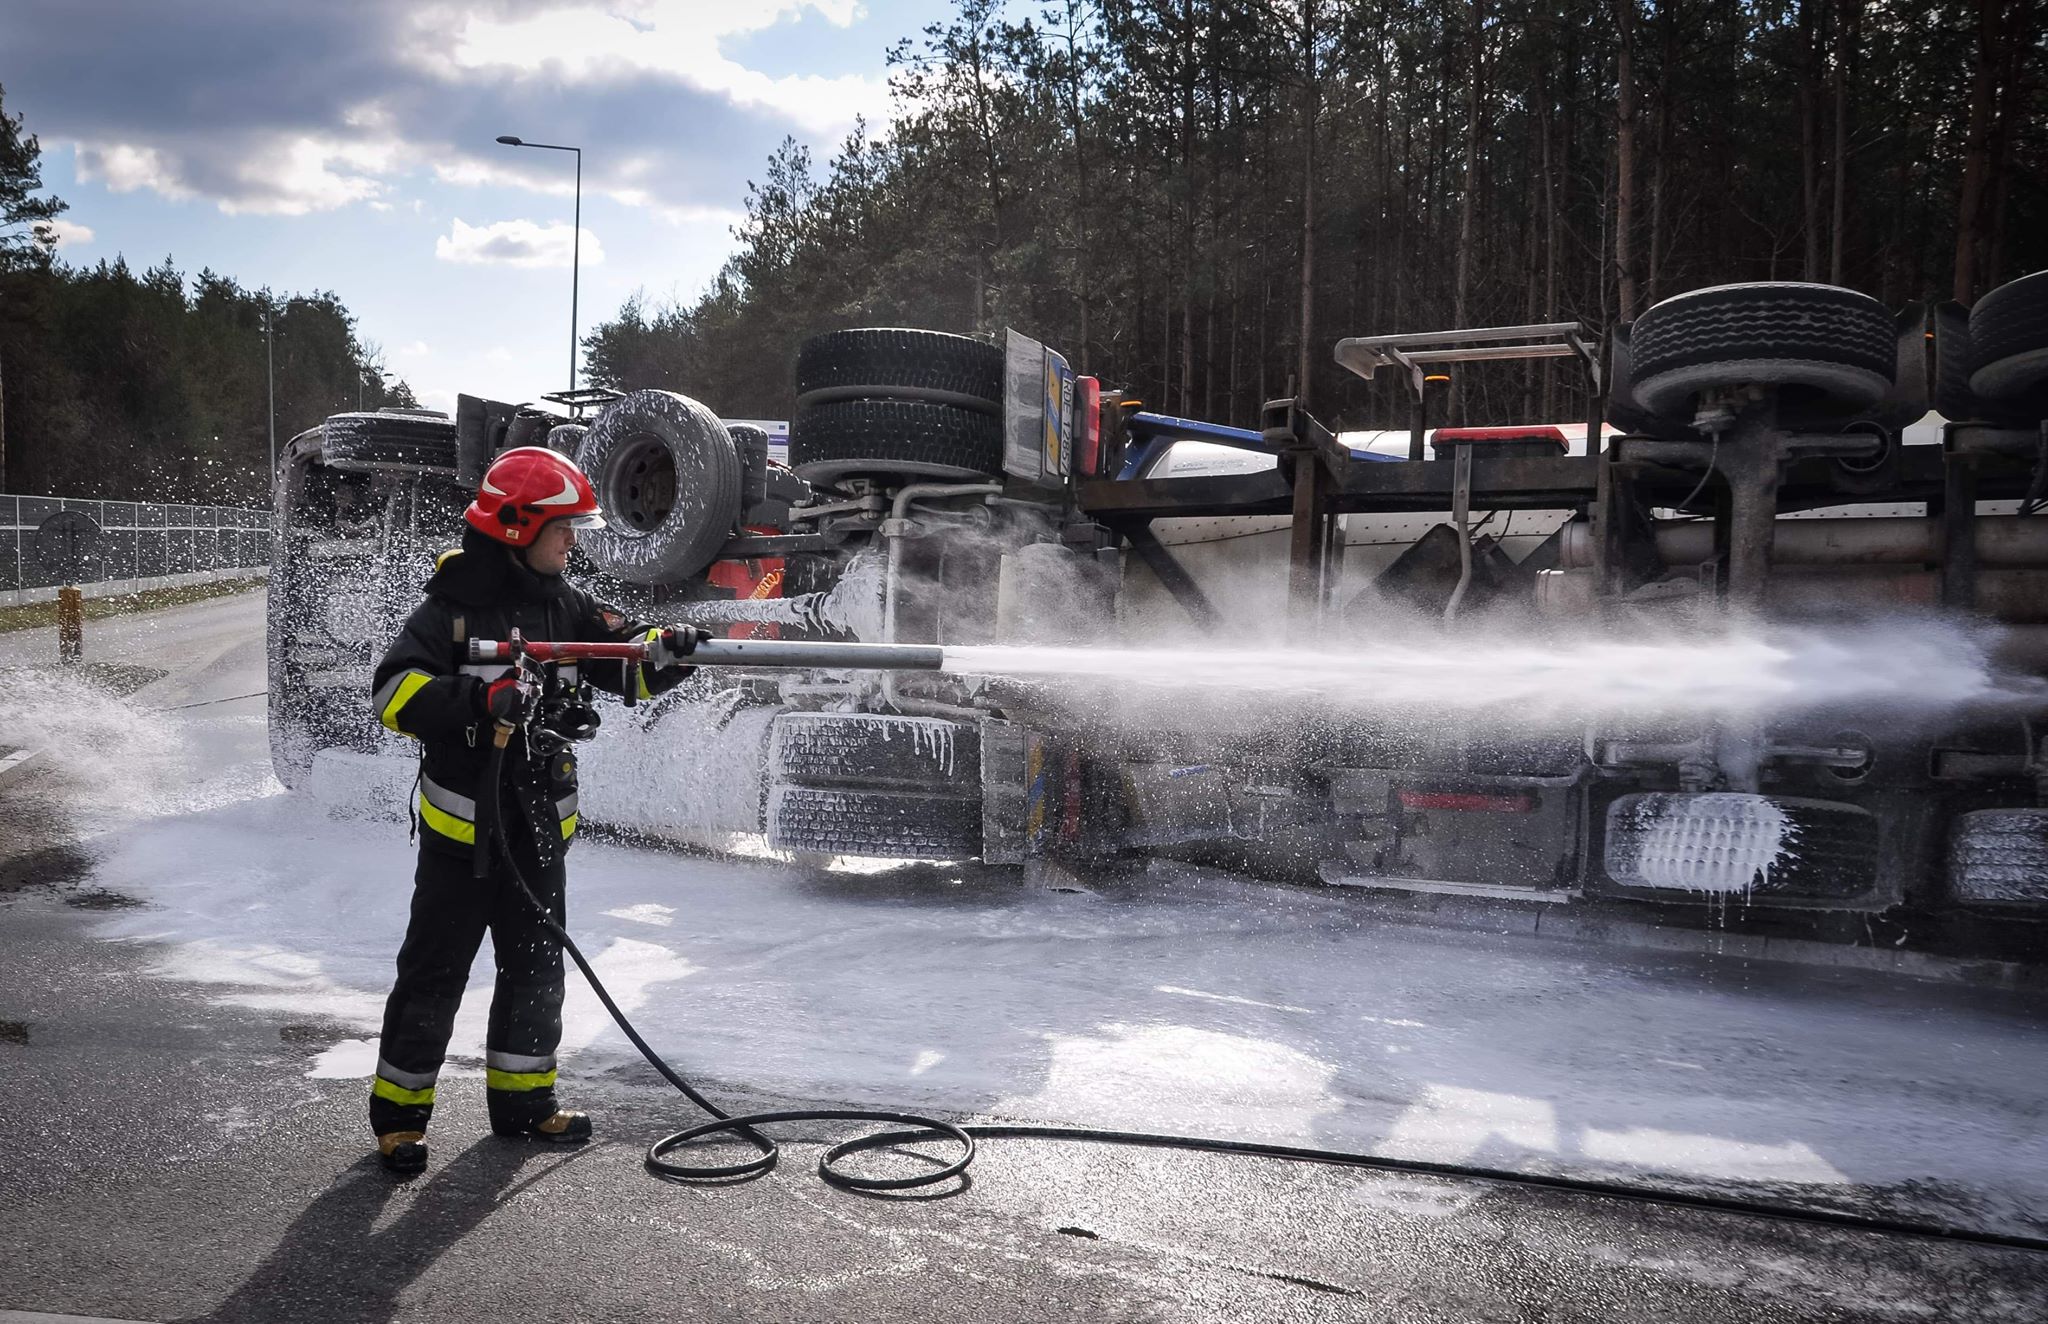 Wypadek na drodze wojewódzkiej. Ciężarówka wiozła substancje niebezpieczne [FOTO] - Zdjęcie główne